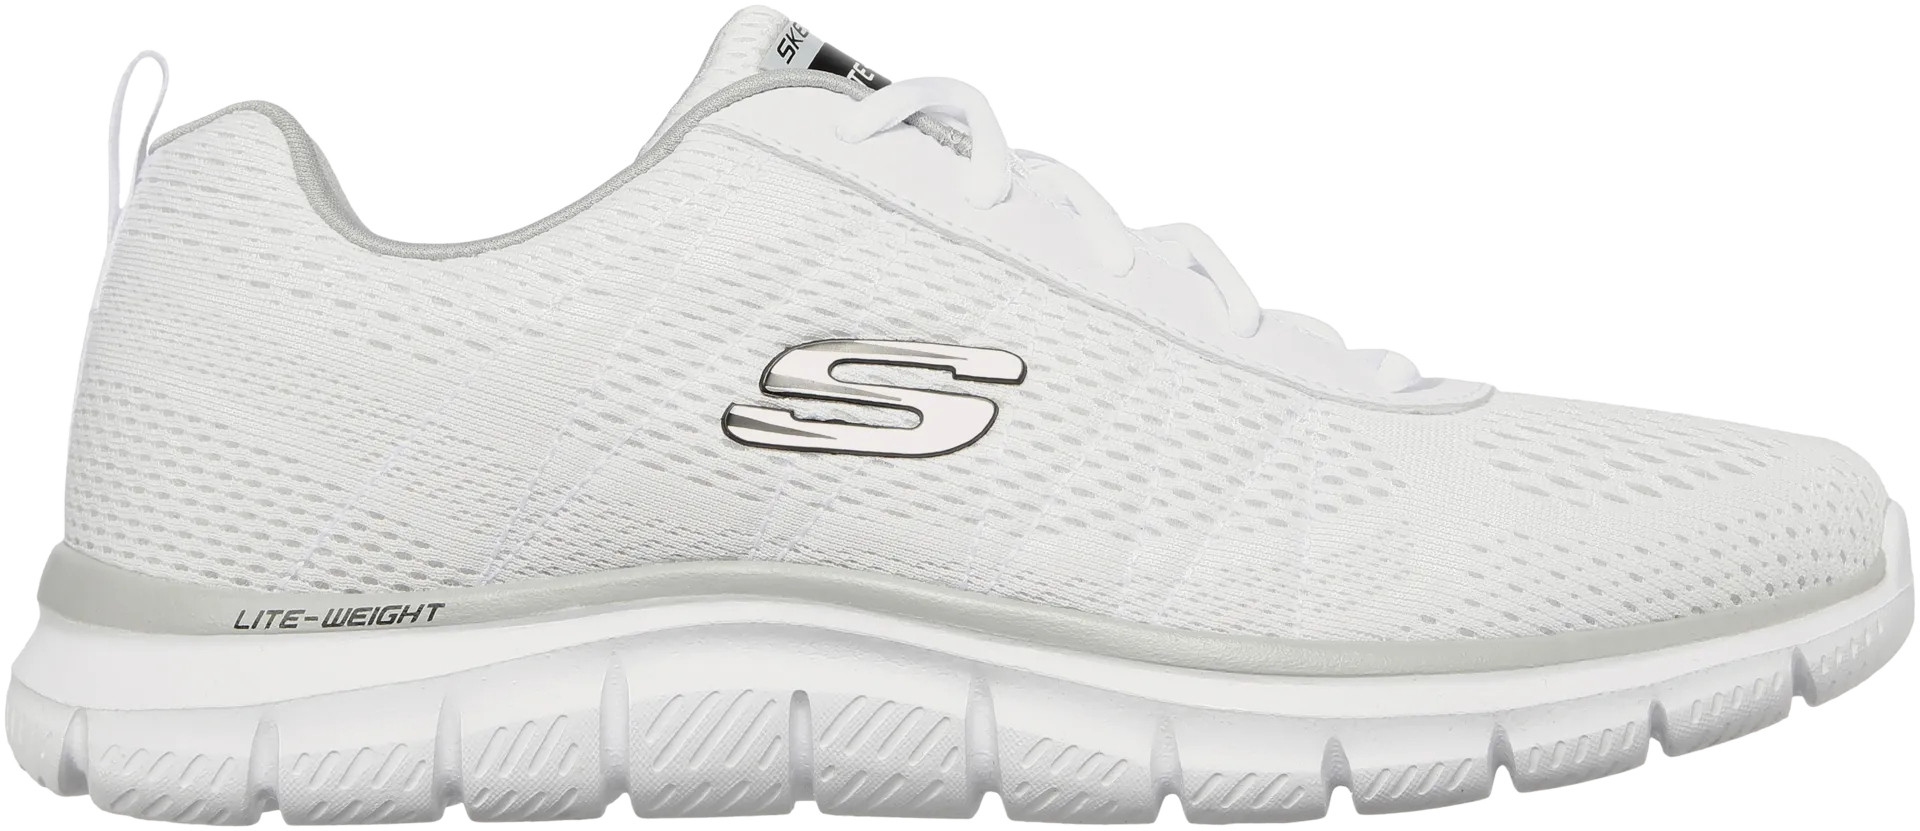 Skechers miesten lenkkarihenkinen vapaa-ajan jalkine Track White - WHITE - 5